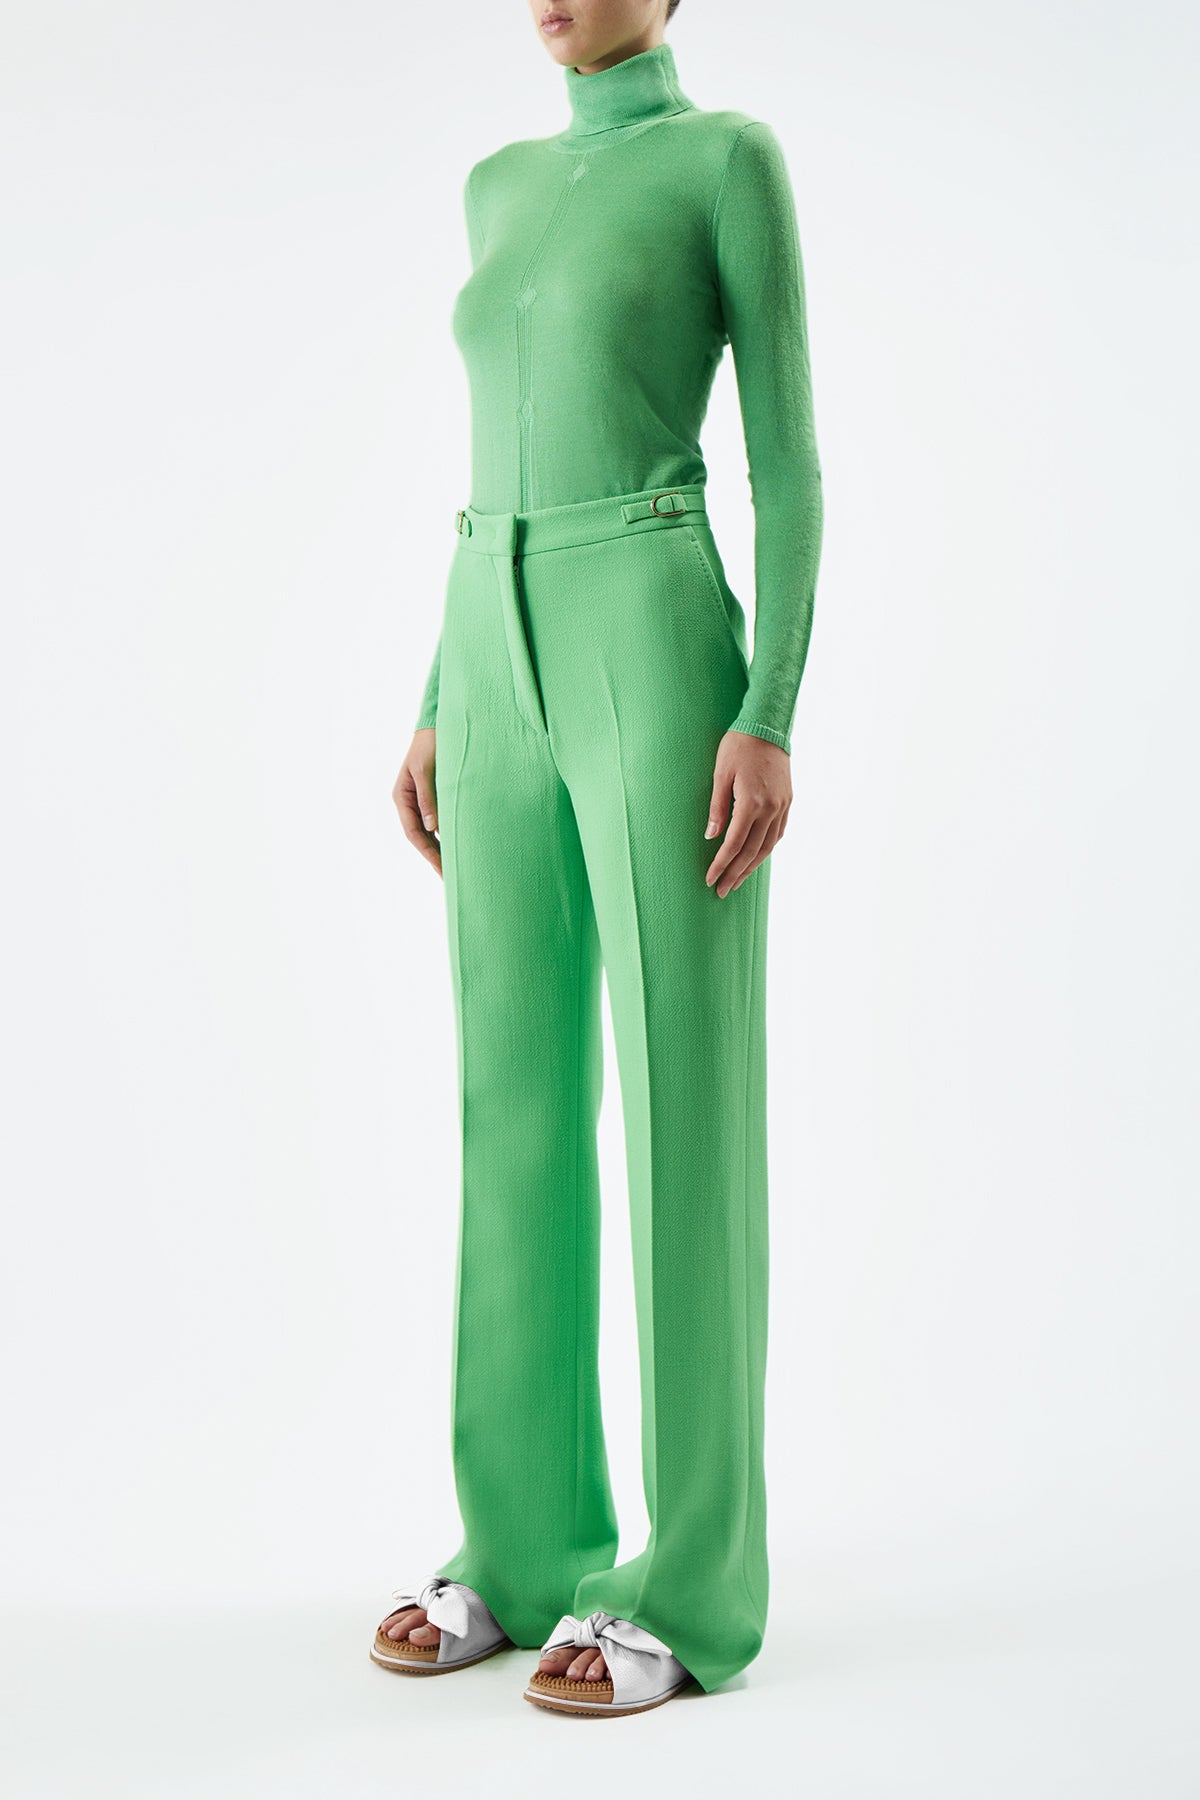 Steinem Knit Turtleneck in Fluorescent Green Cashmere Silk